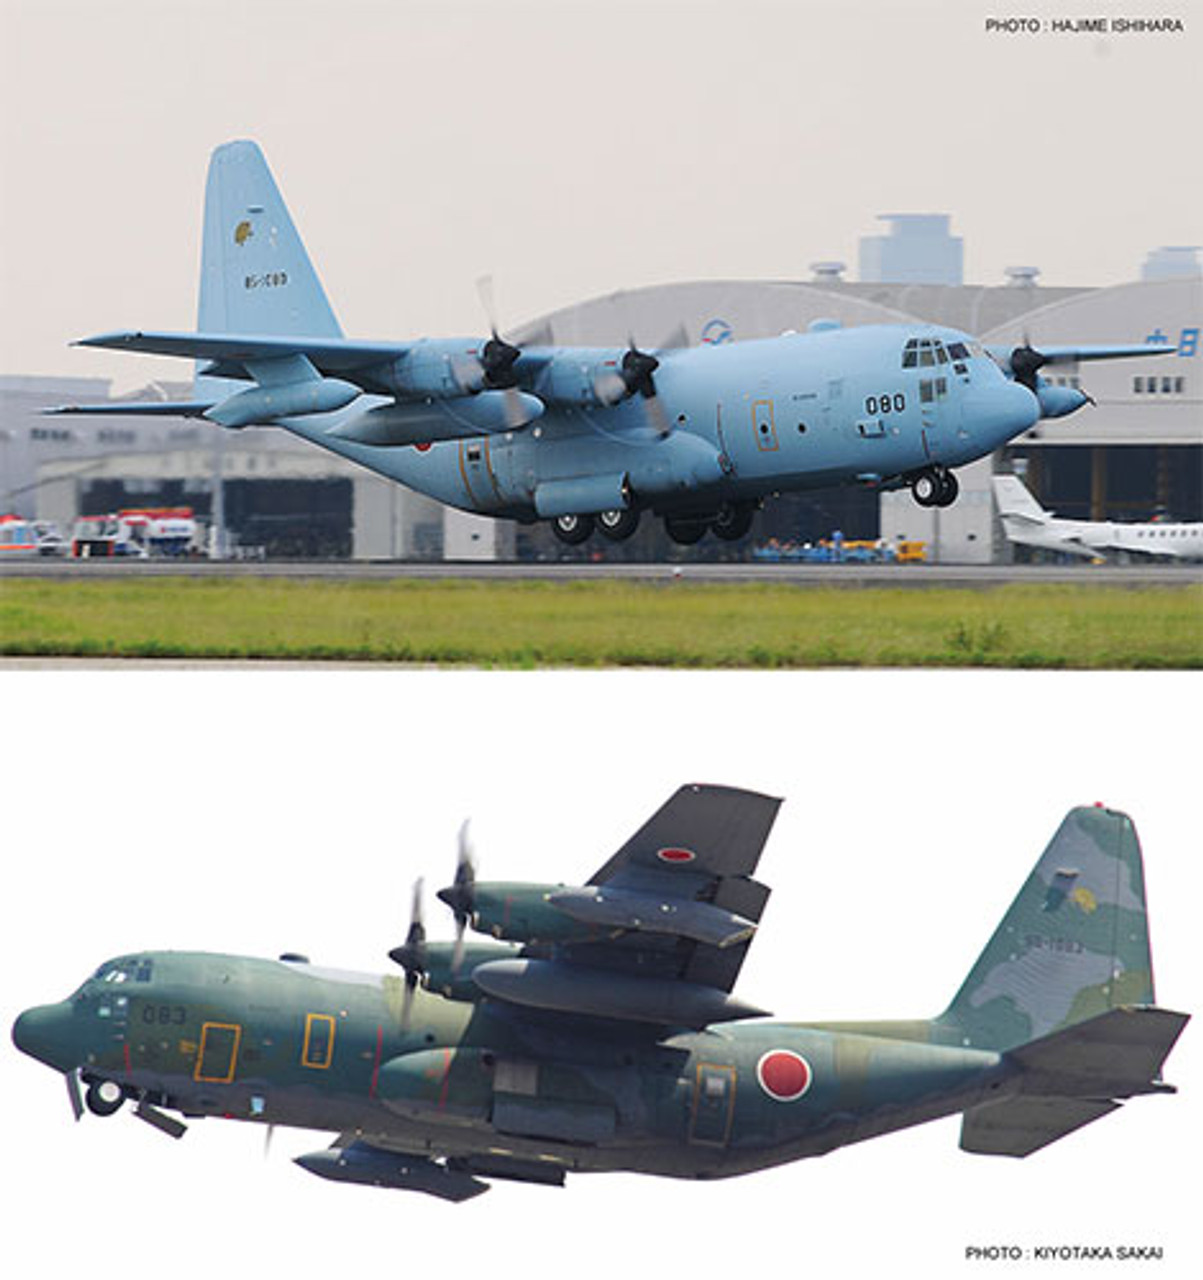 Hasegawa 10818 1/200 KC-130H Hercules "JASDF" (2 kits) Limited Edition Plastic Model Kit